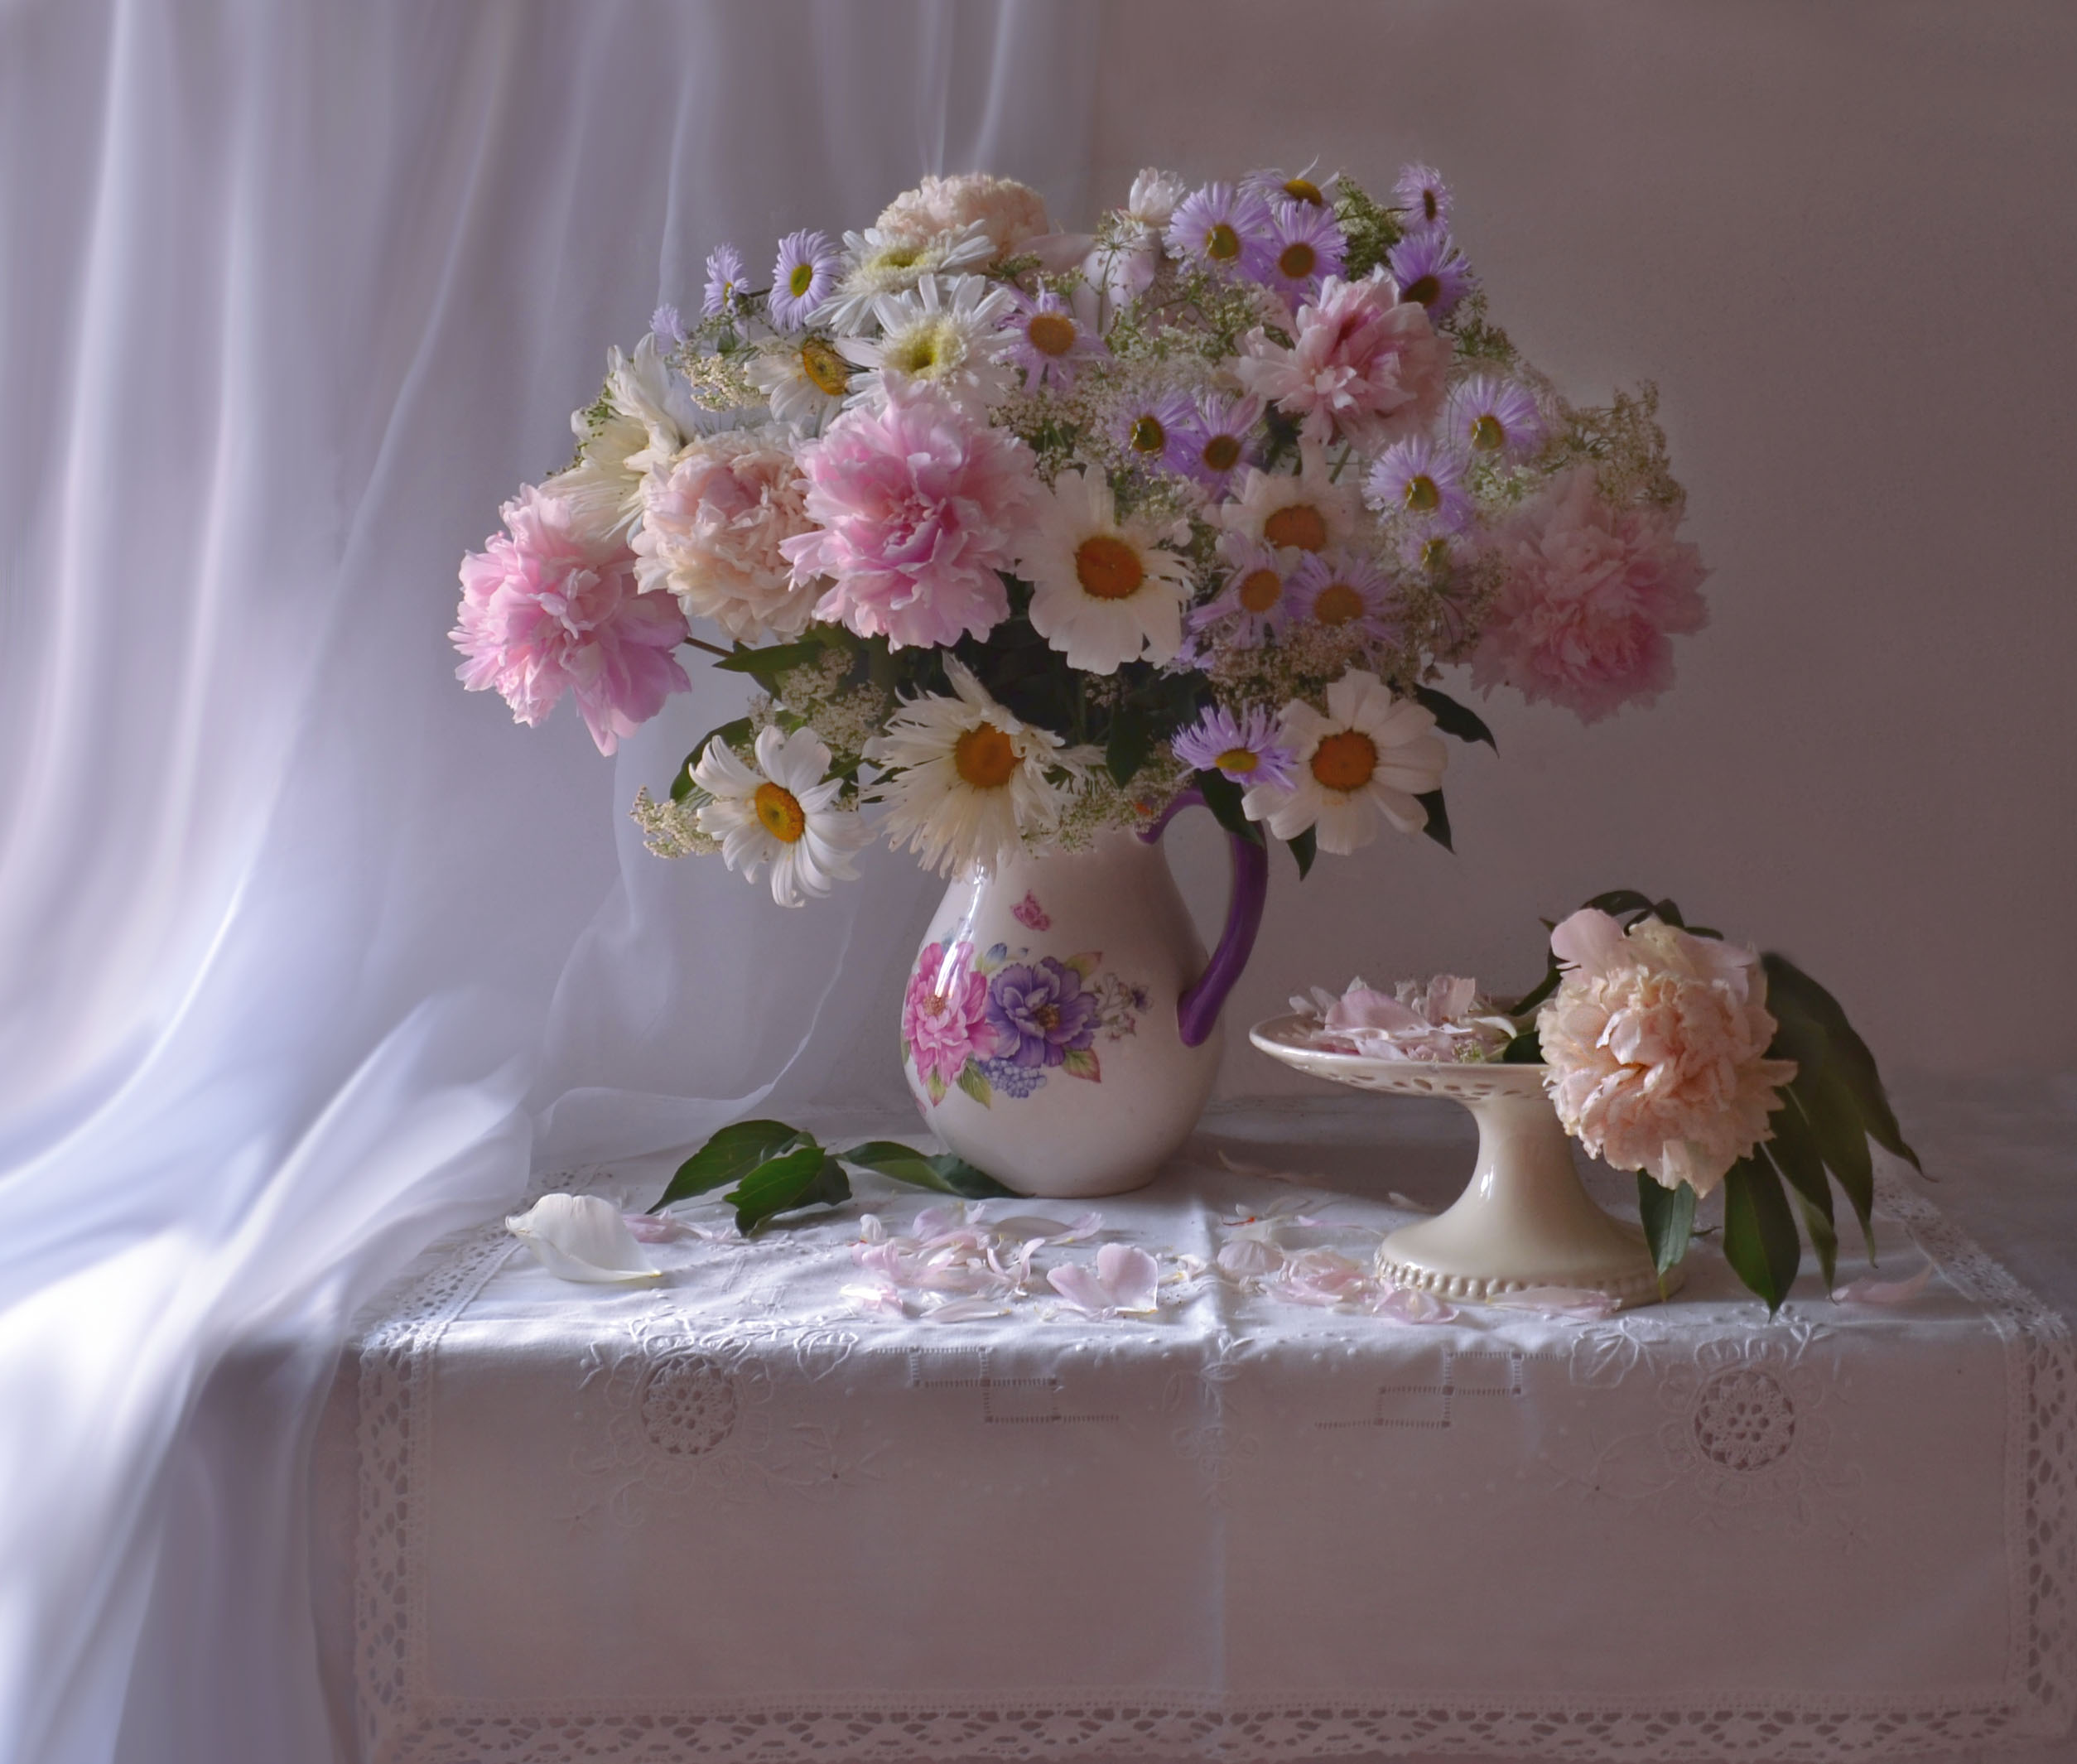 桌面上的壁纸照片 雏菊 鲜花